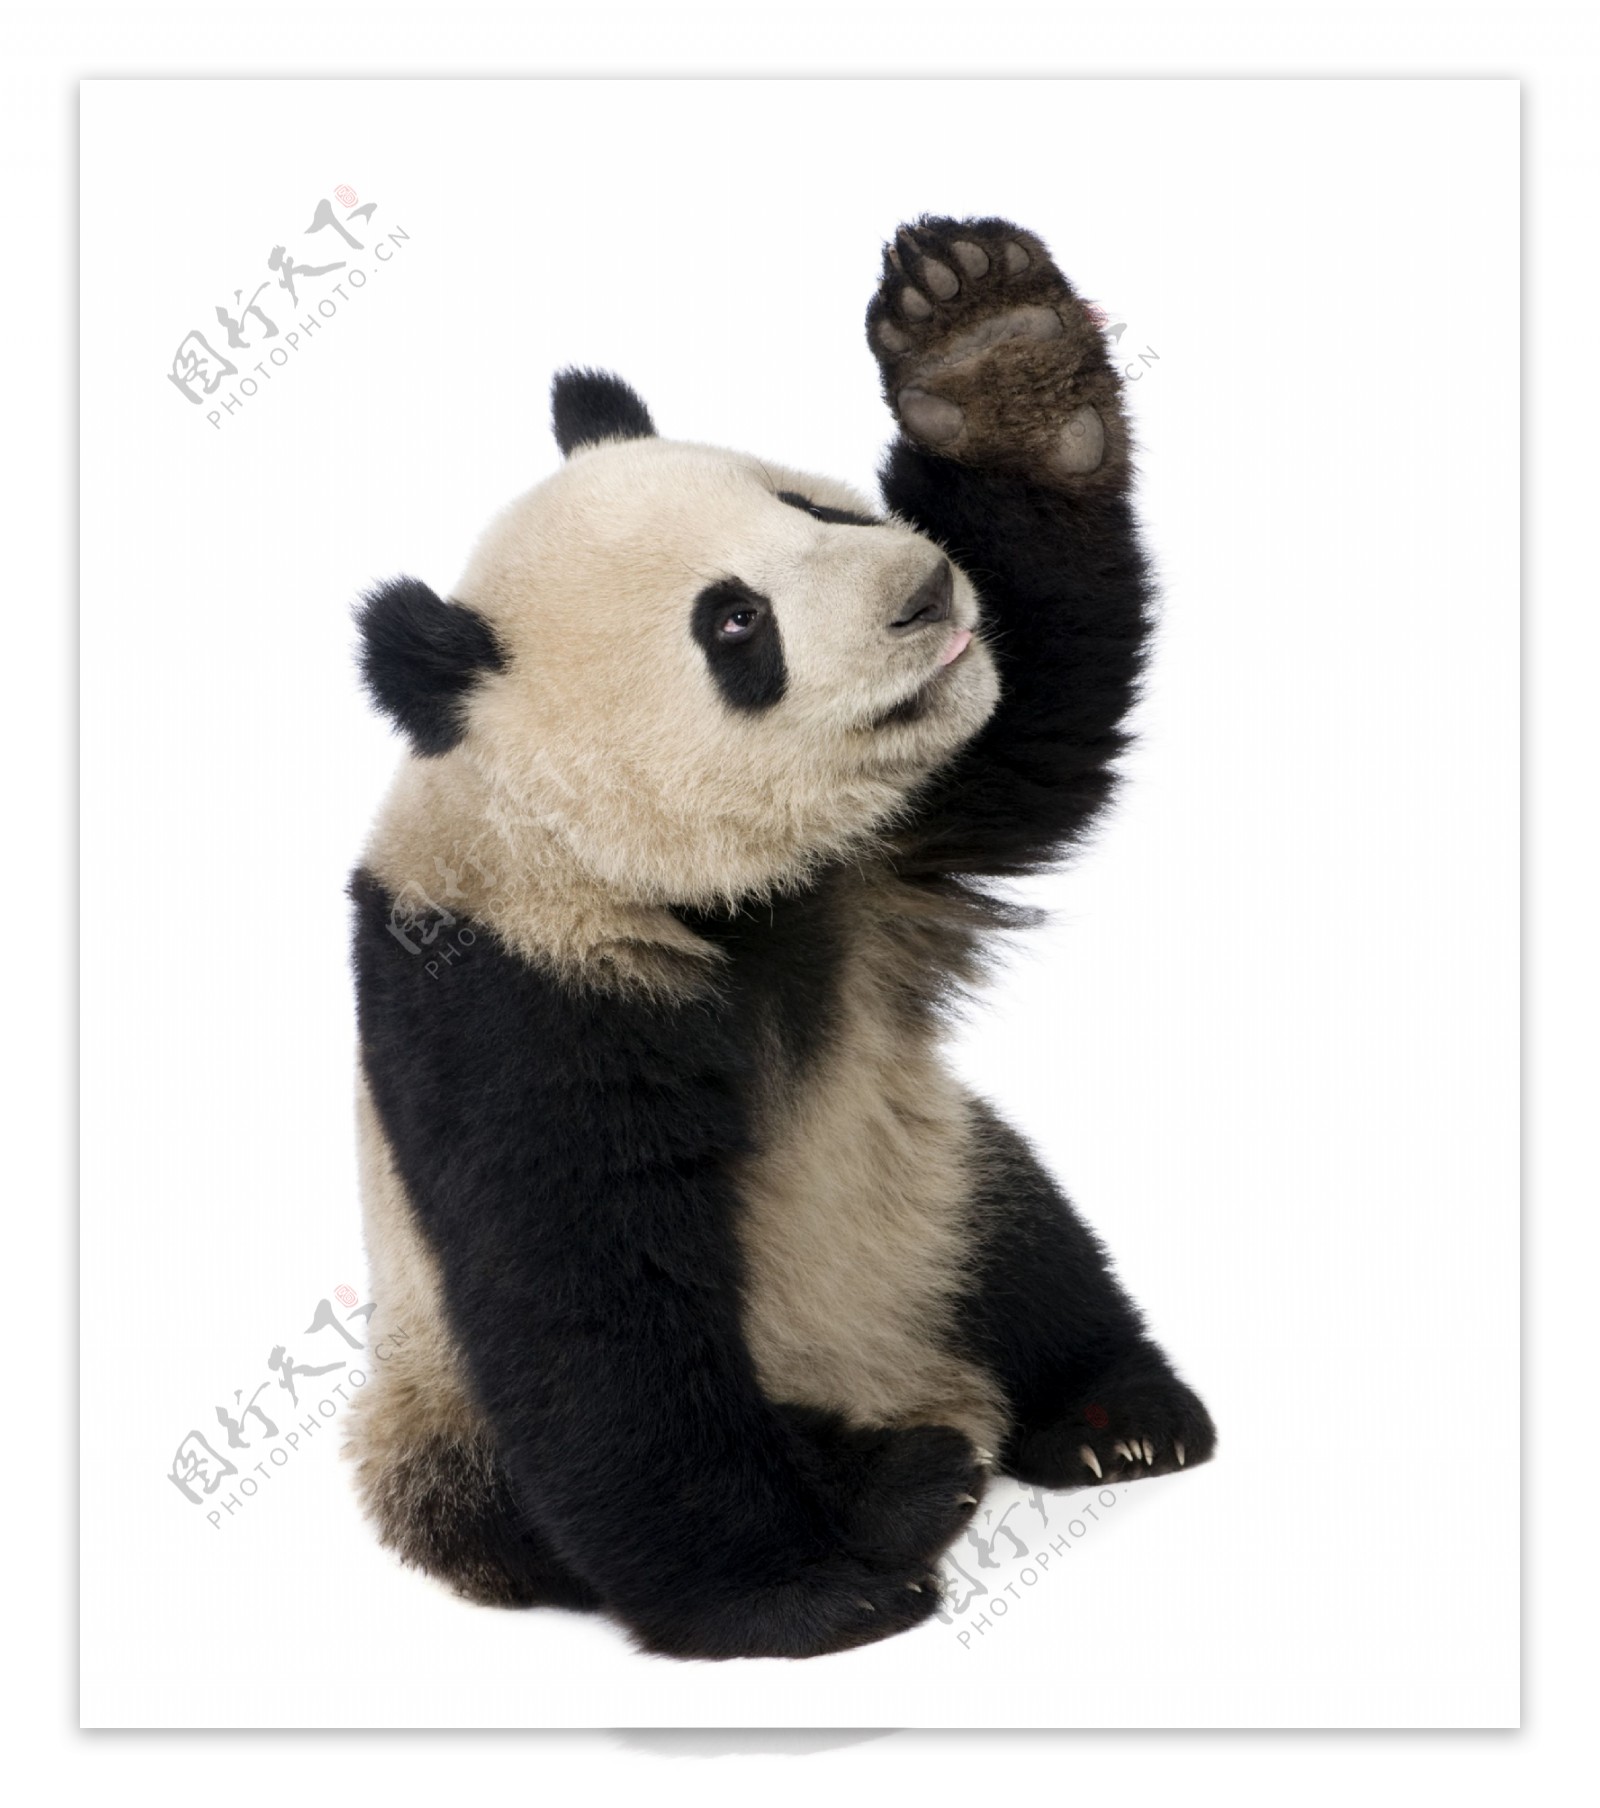 熊猫摄影图片